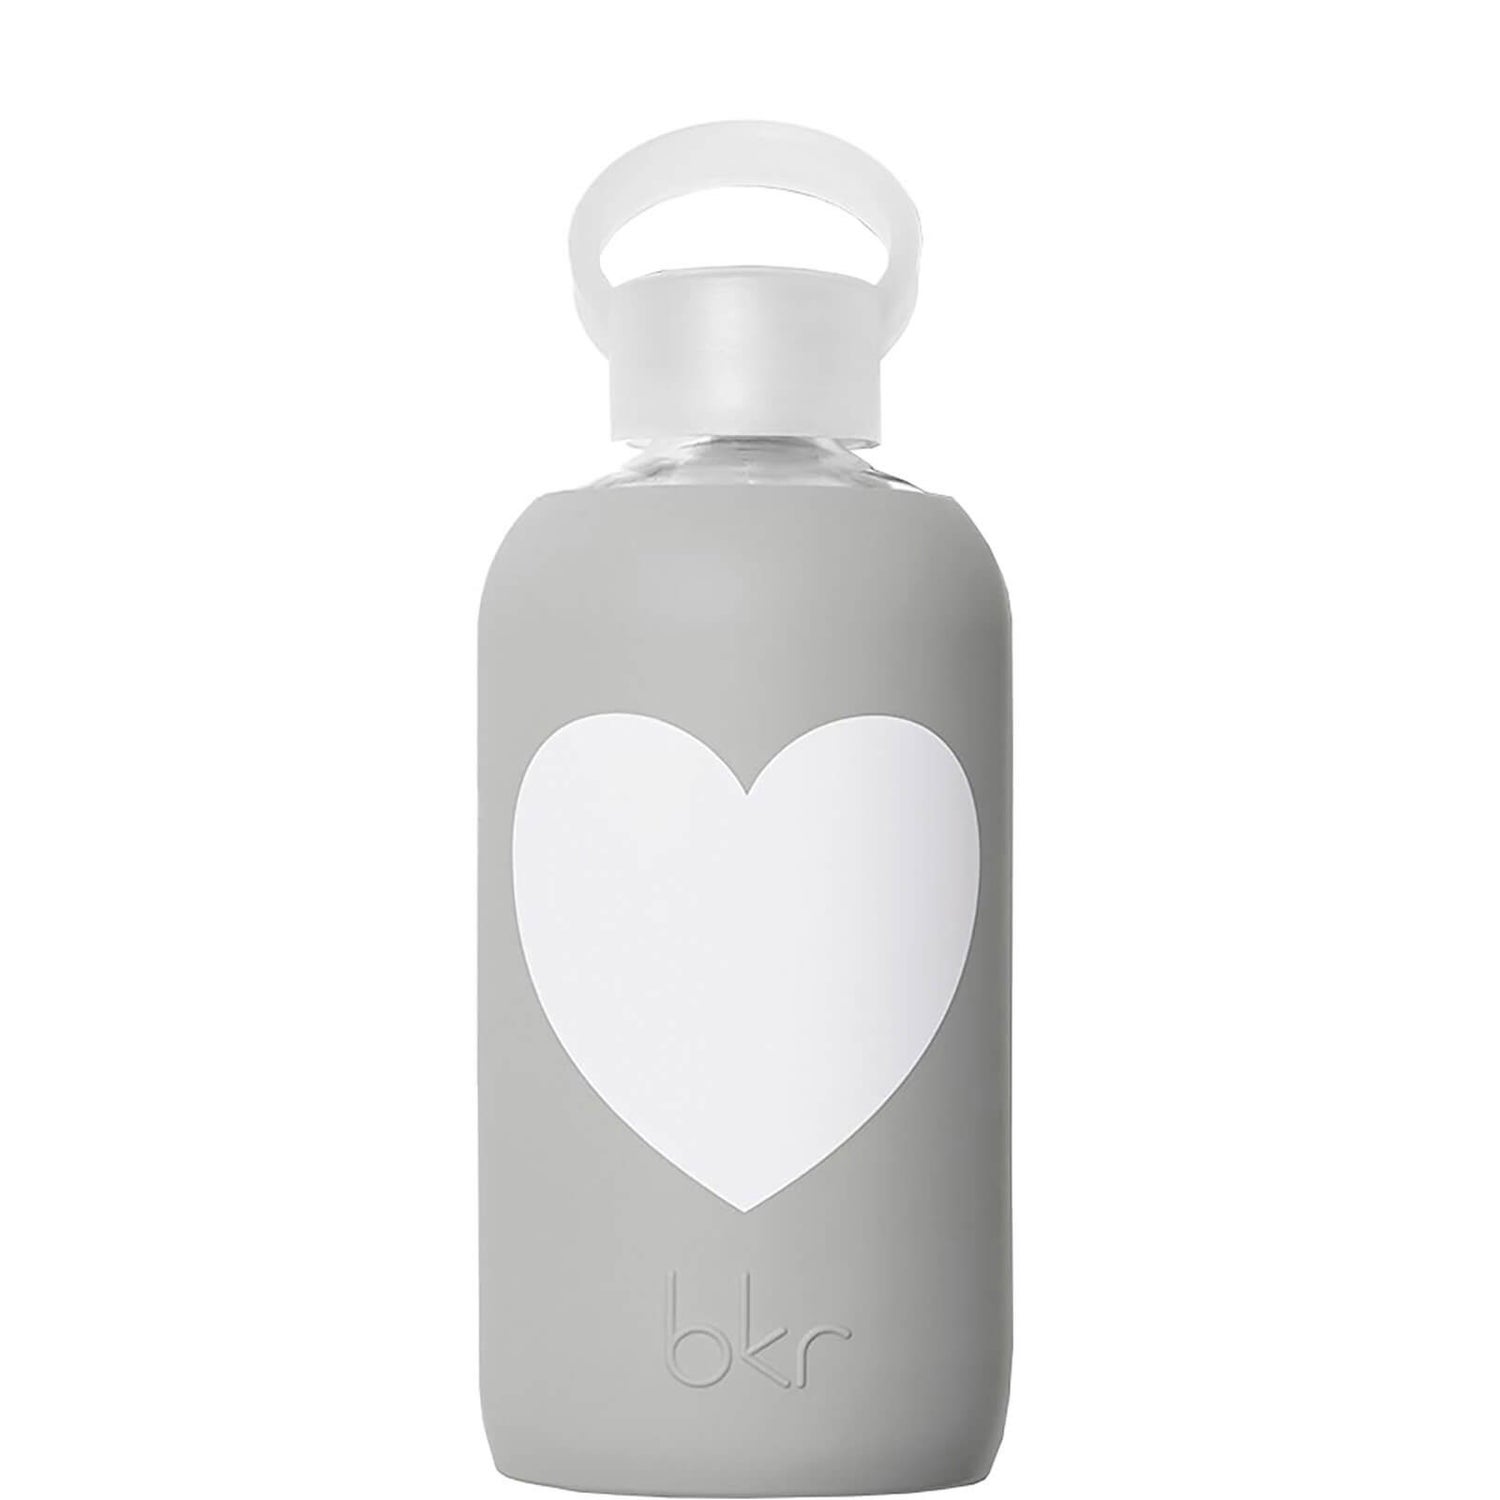 Bkr London Heart Glass Water Bottle